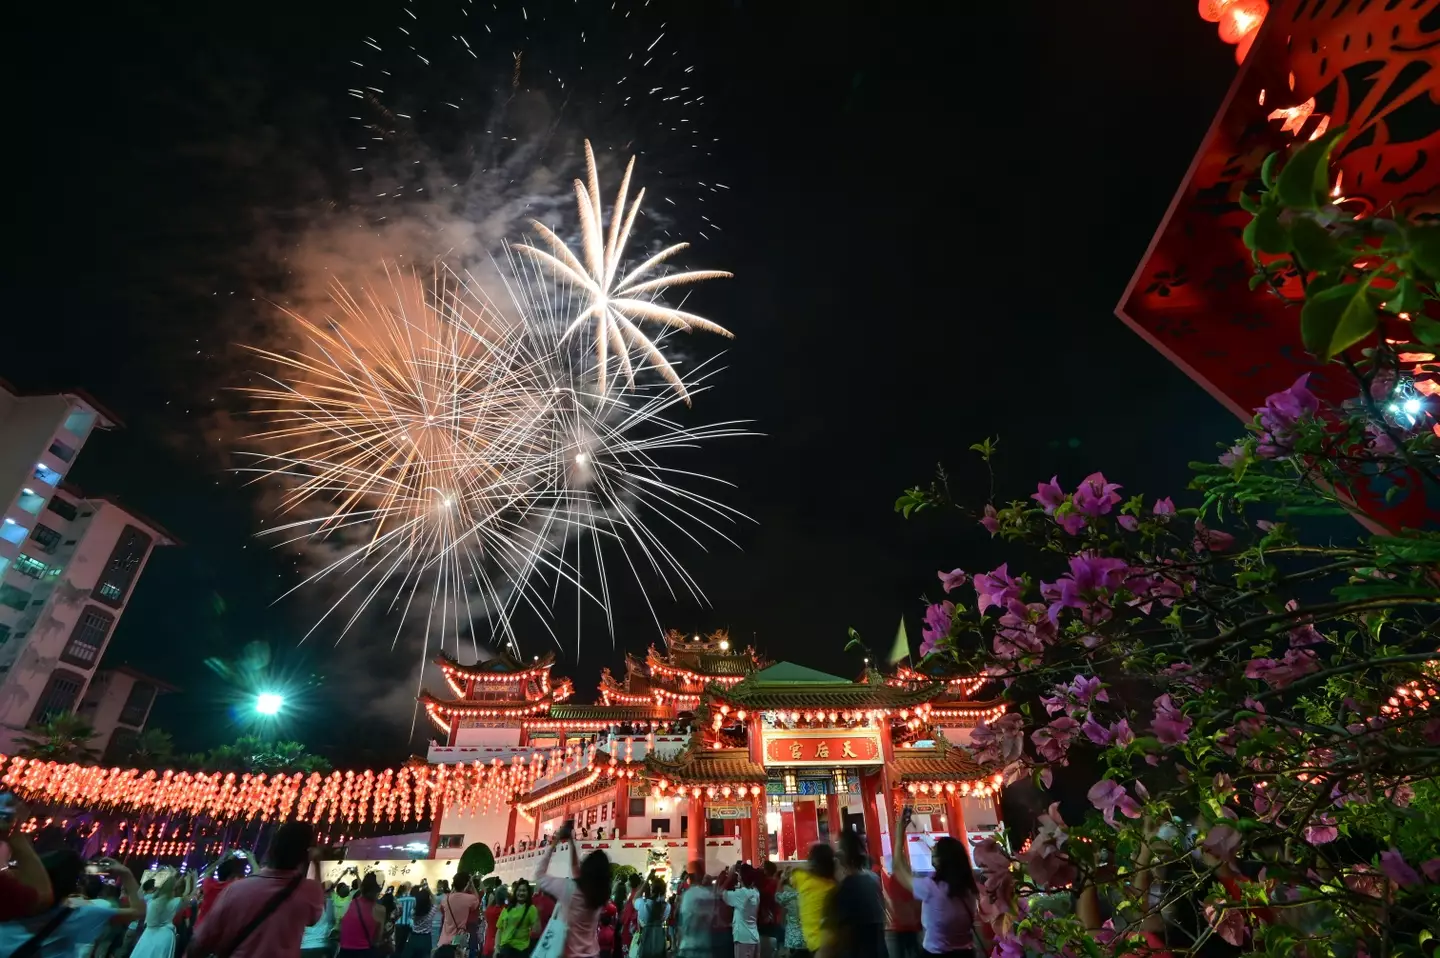 Chinese New Year celebrations in Kuala Lumpur, Malaysia.